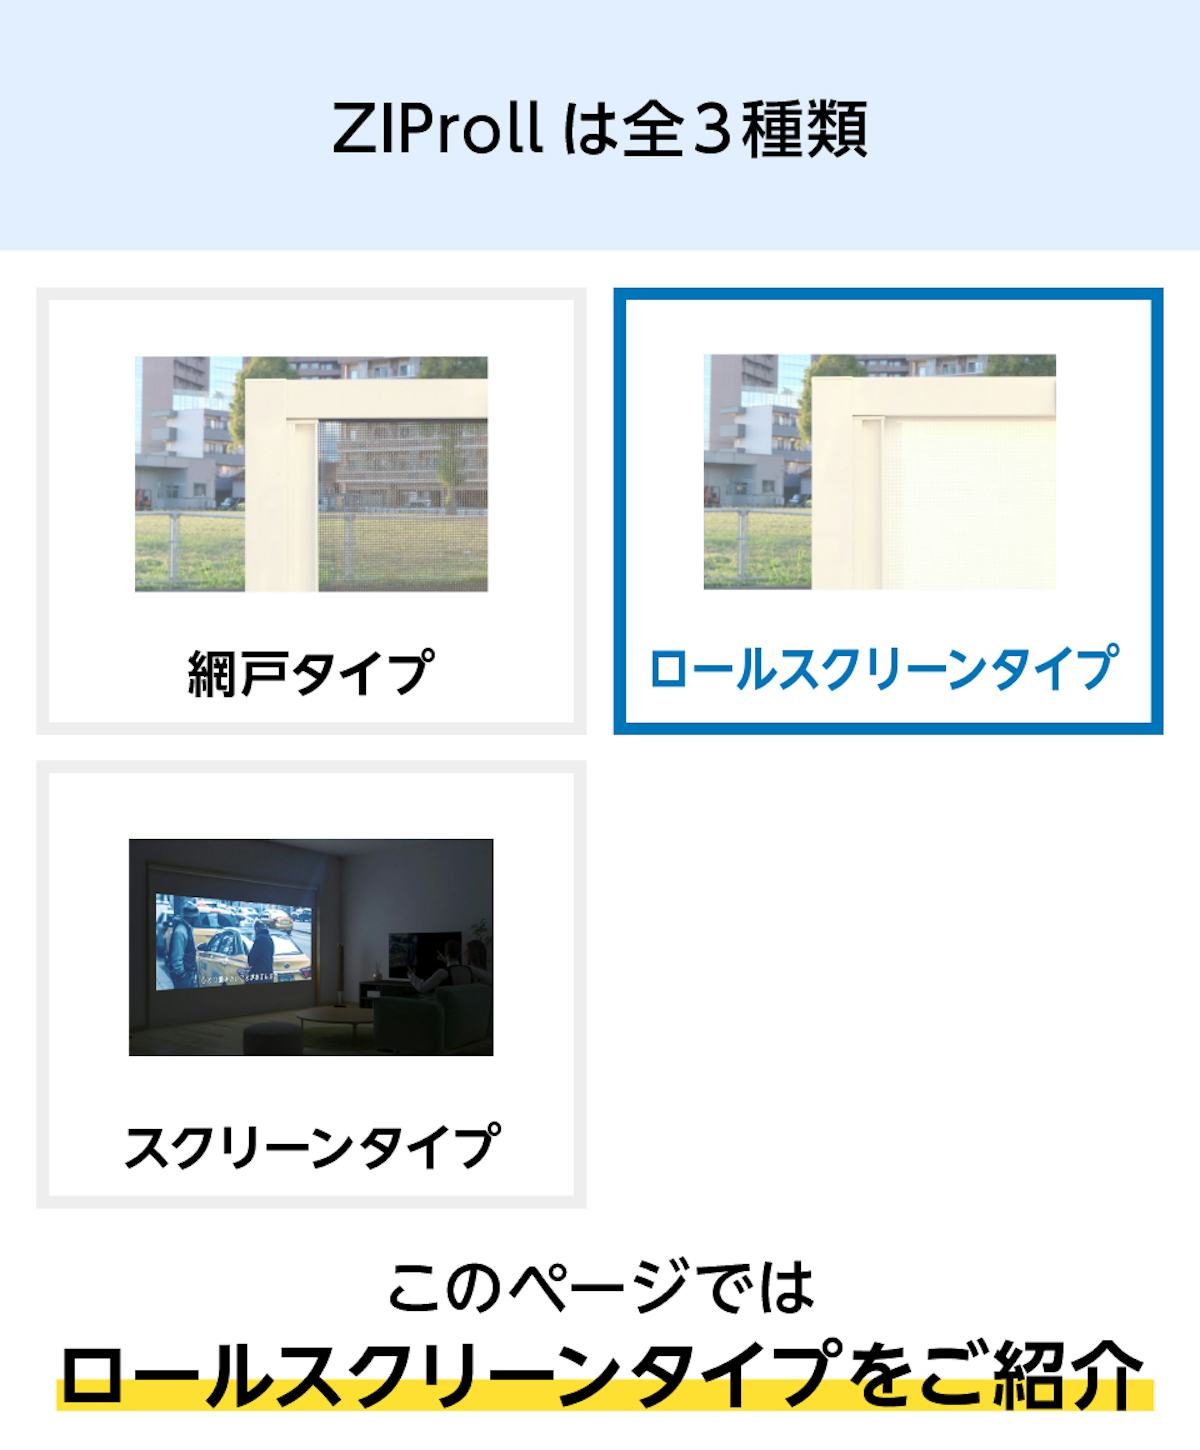 スライド式スクリーン「ZIProll ロールスクリーンタイプ」 - 光・視線を遮るロールスクリーンタイプ